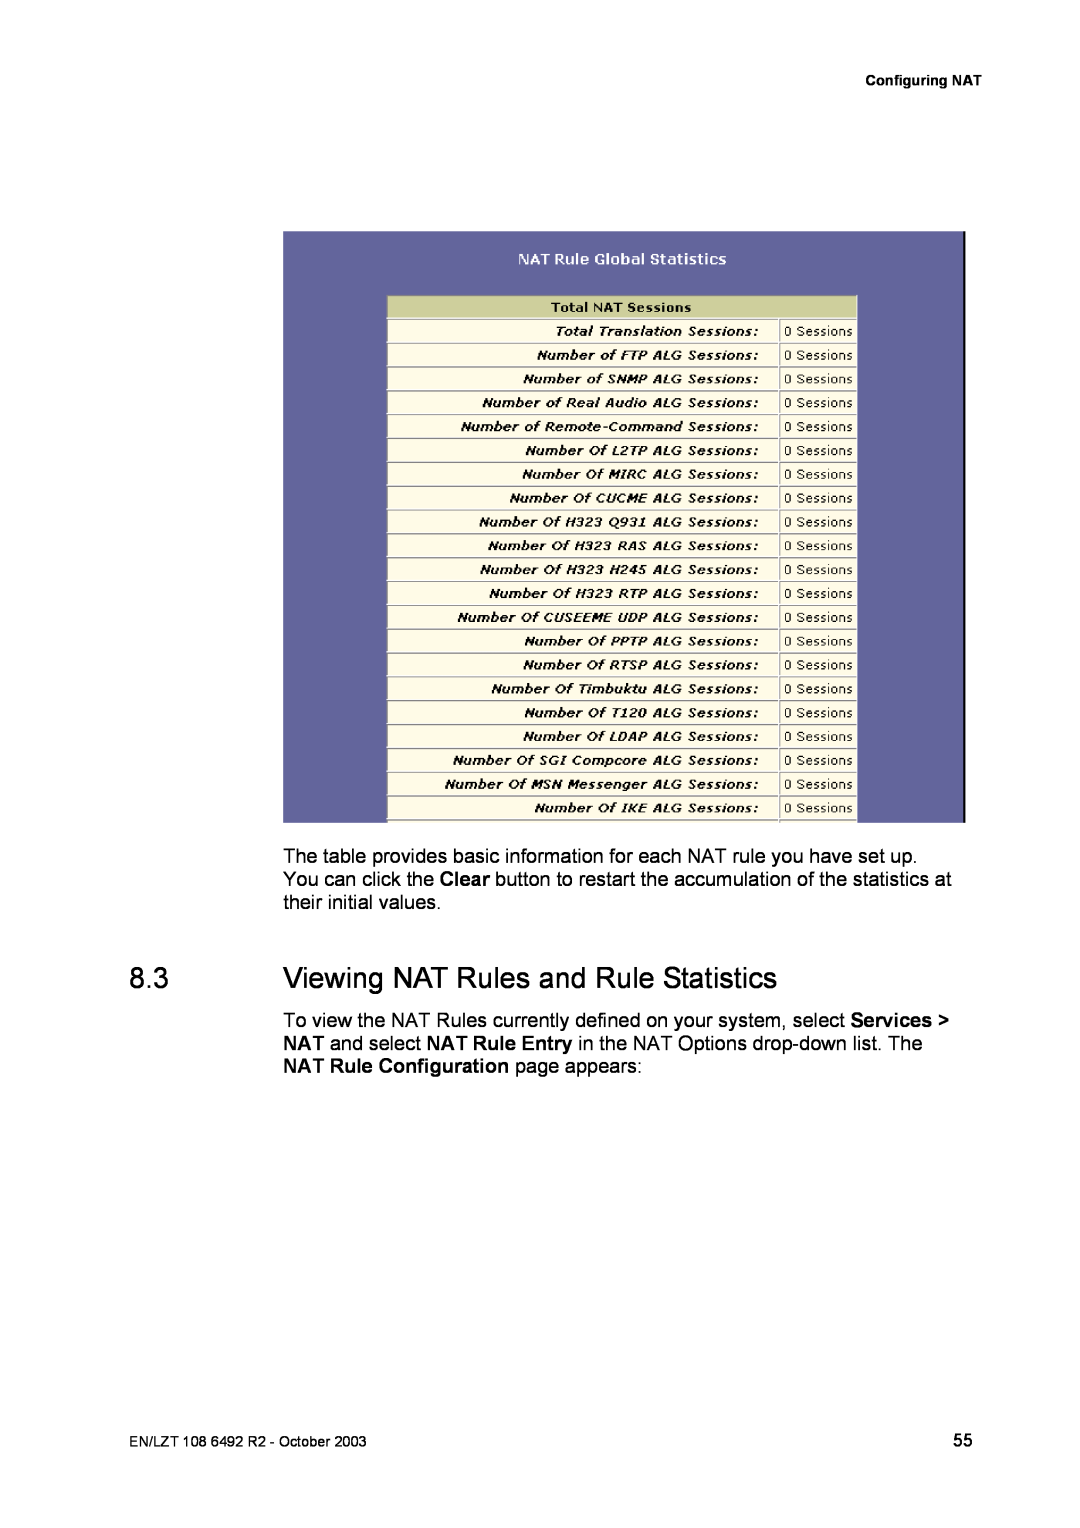 Garmin HM210DP/DI manual Viewing NAT Rules and Rule Statistics 